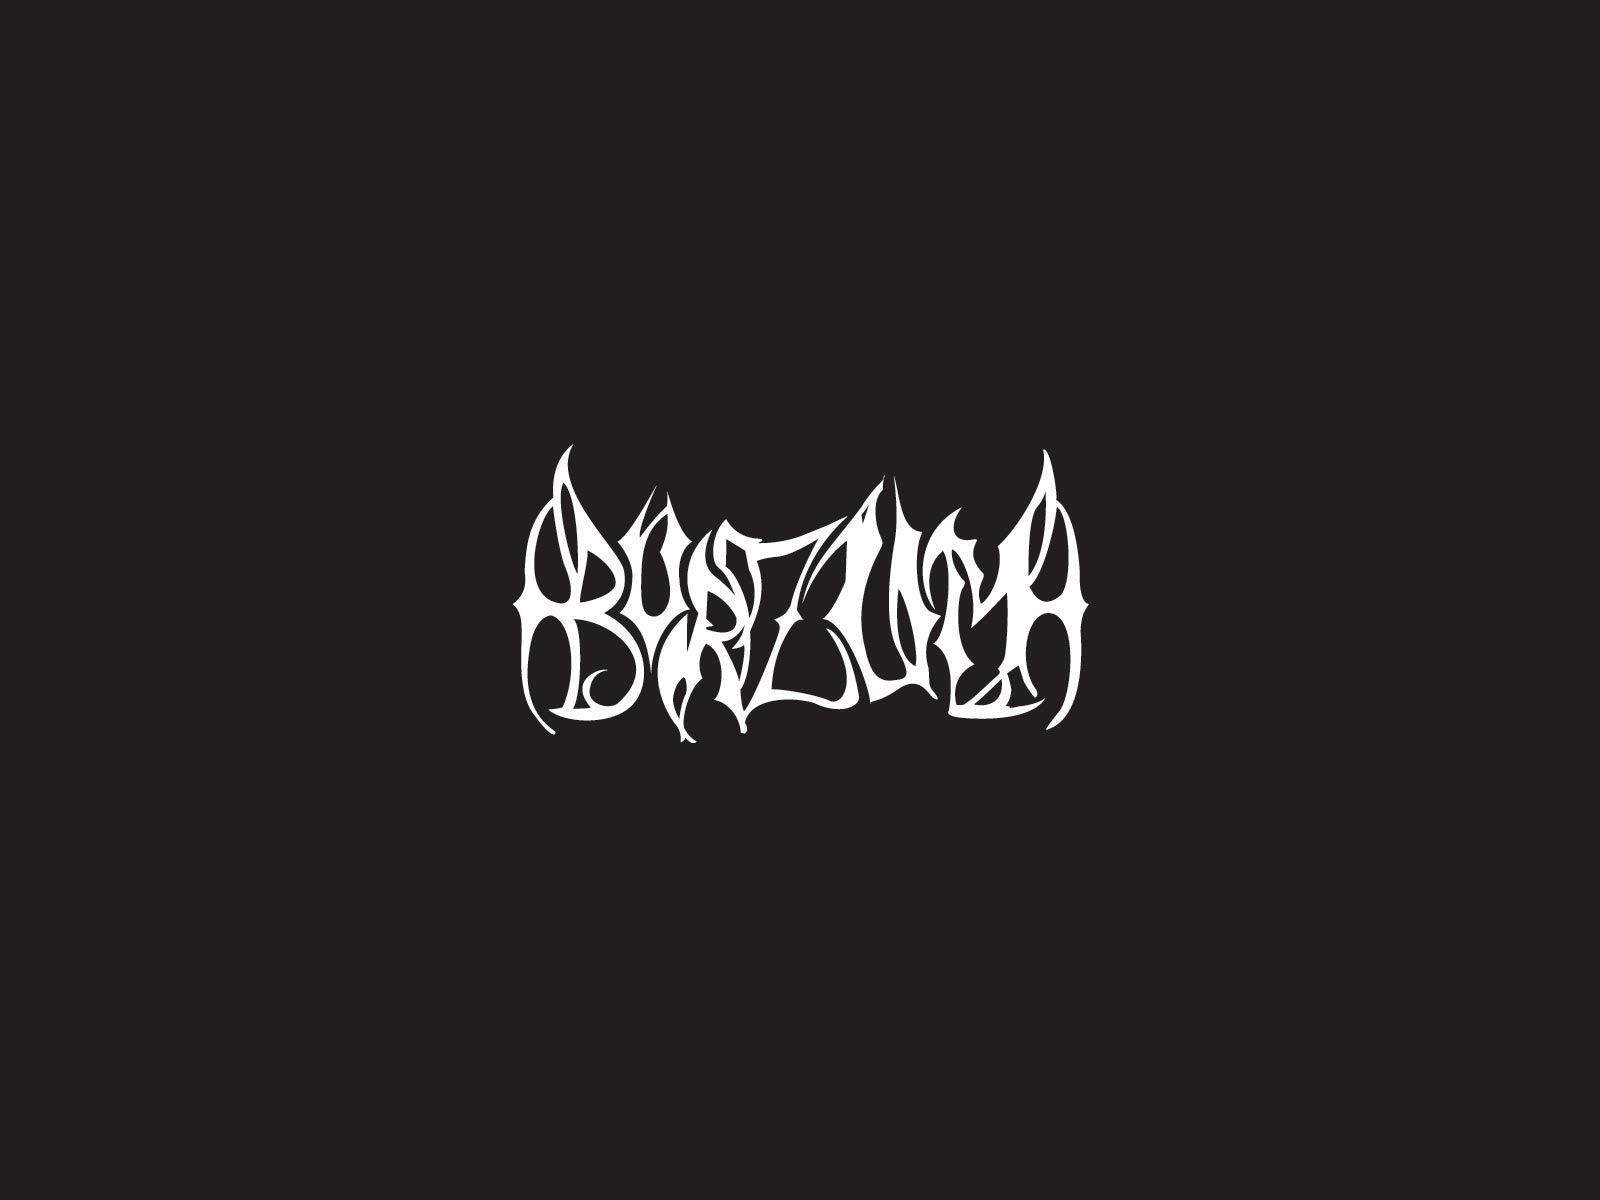 Burzum band logo. Band logos band logos, metal bands logos